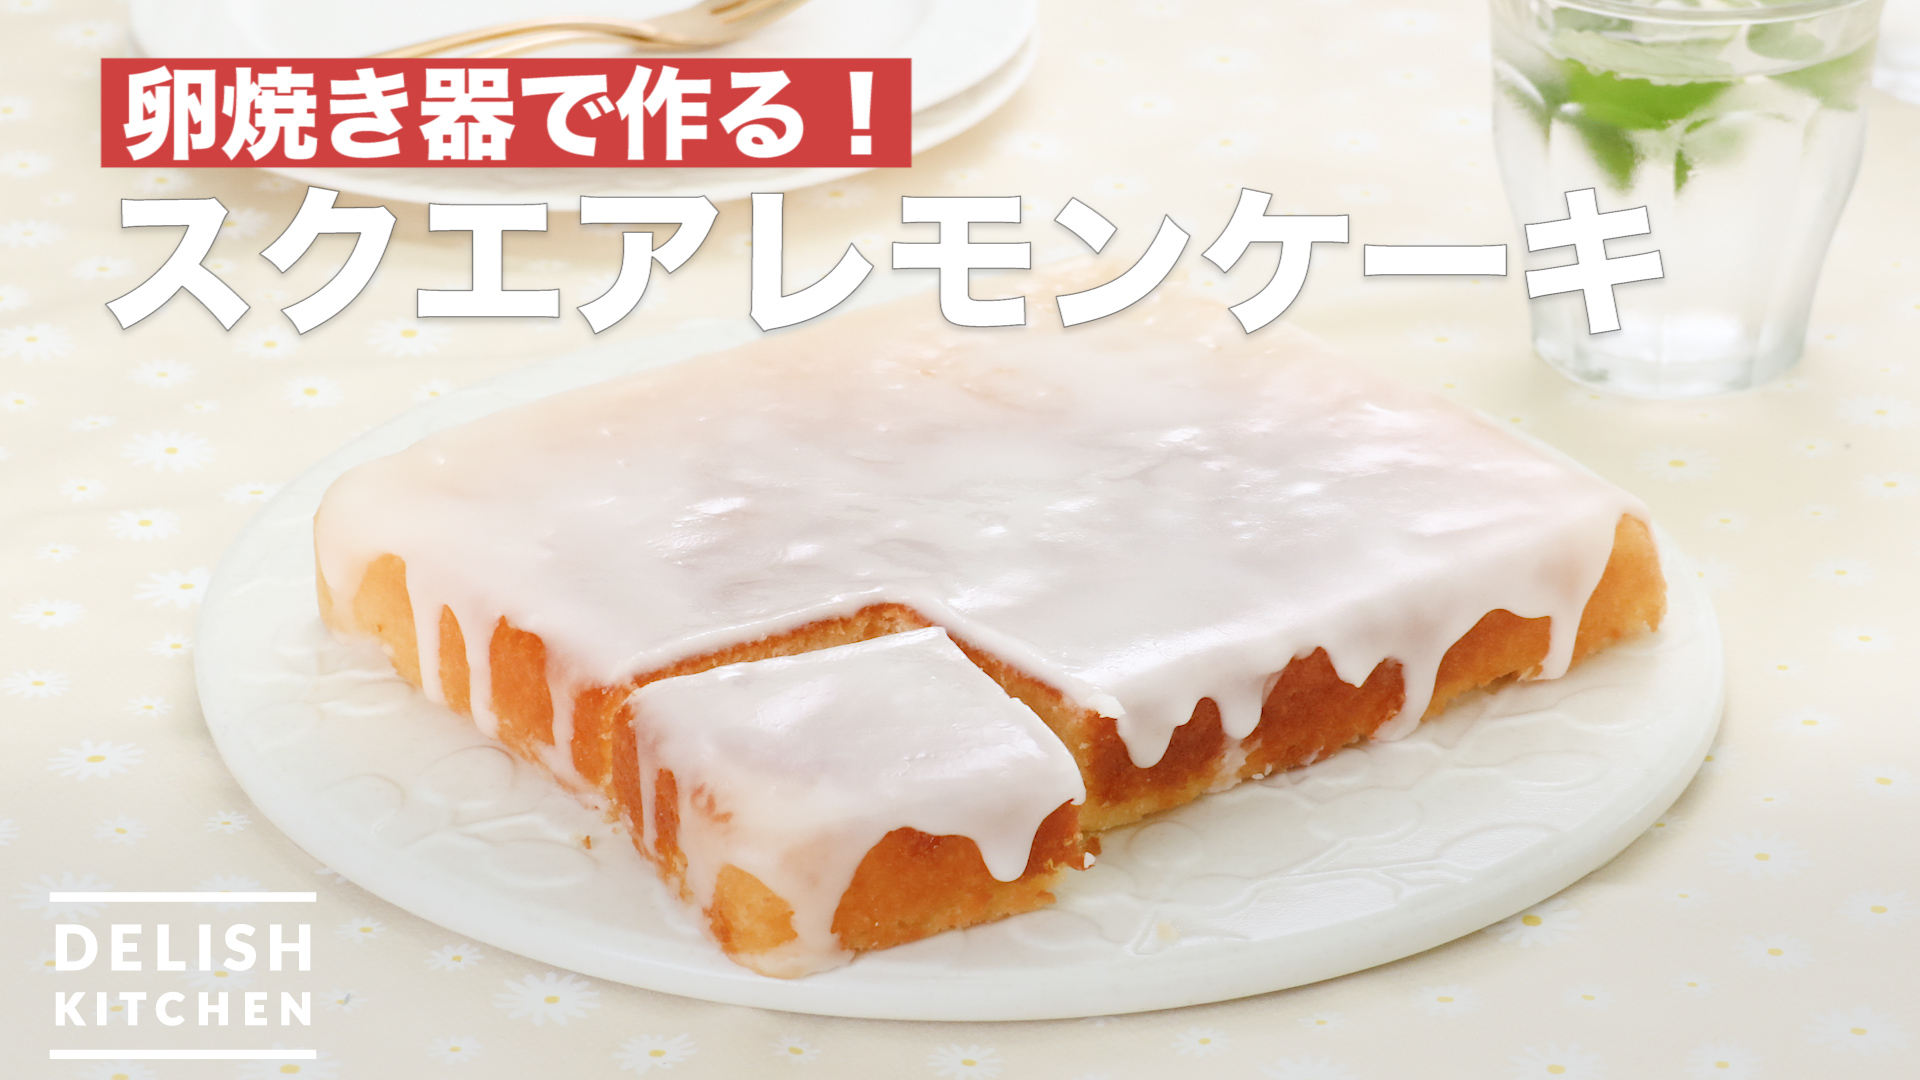 卵焼き器で作る スクエアレモンケーキ How To Make Square Lemon Cake Delish Kitchen デリッシュキッチン Yahoo Japan